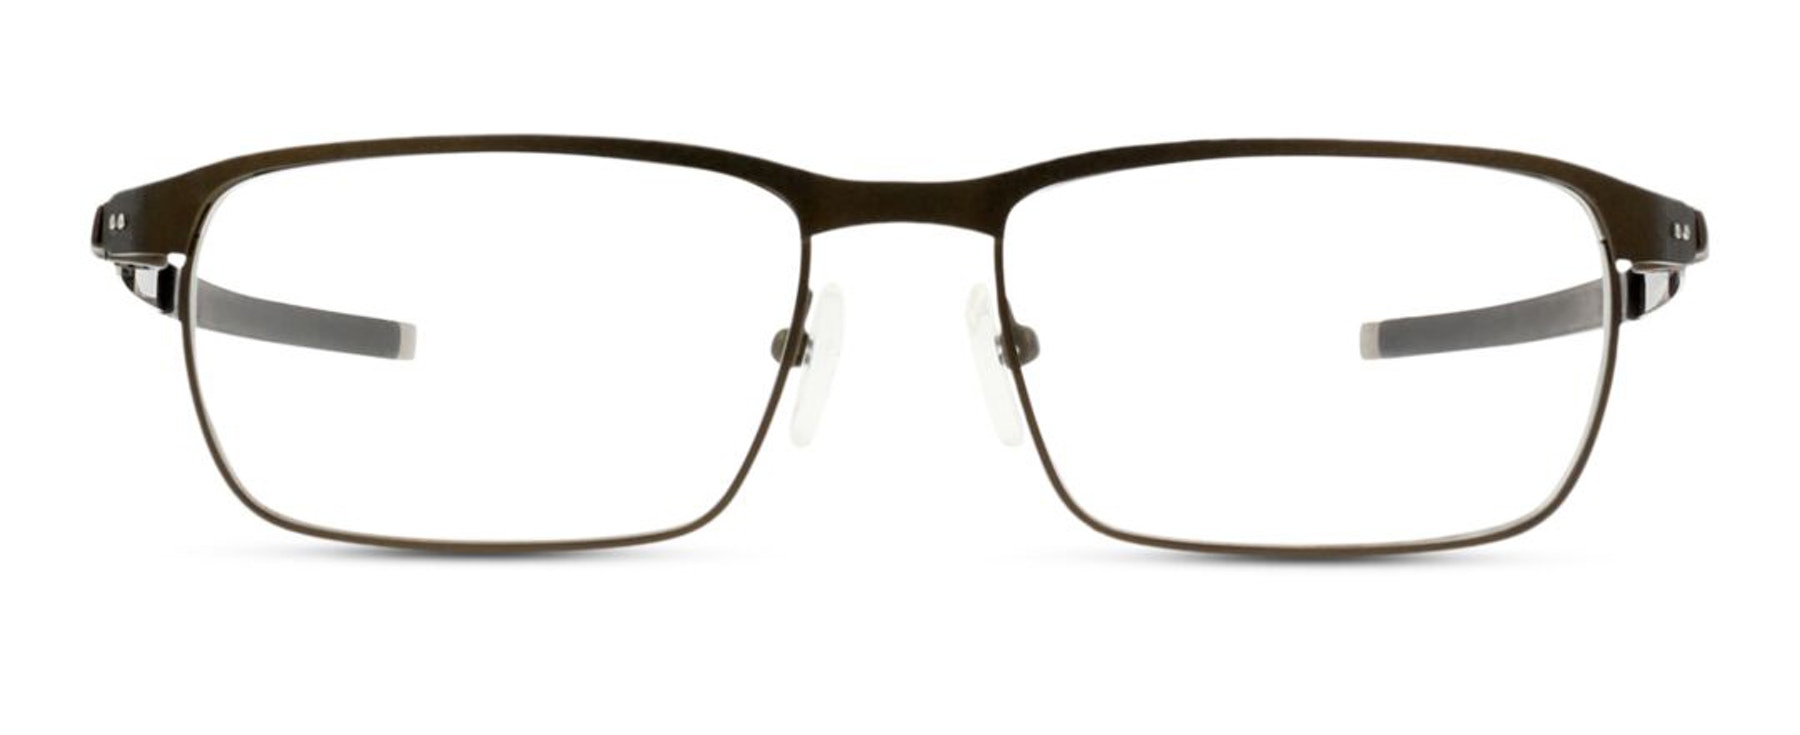 mens glasses oakley